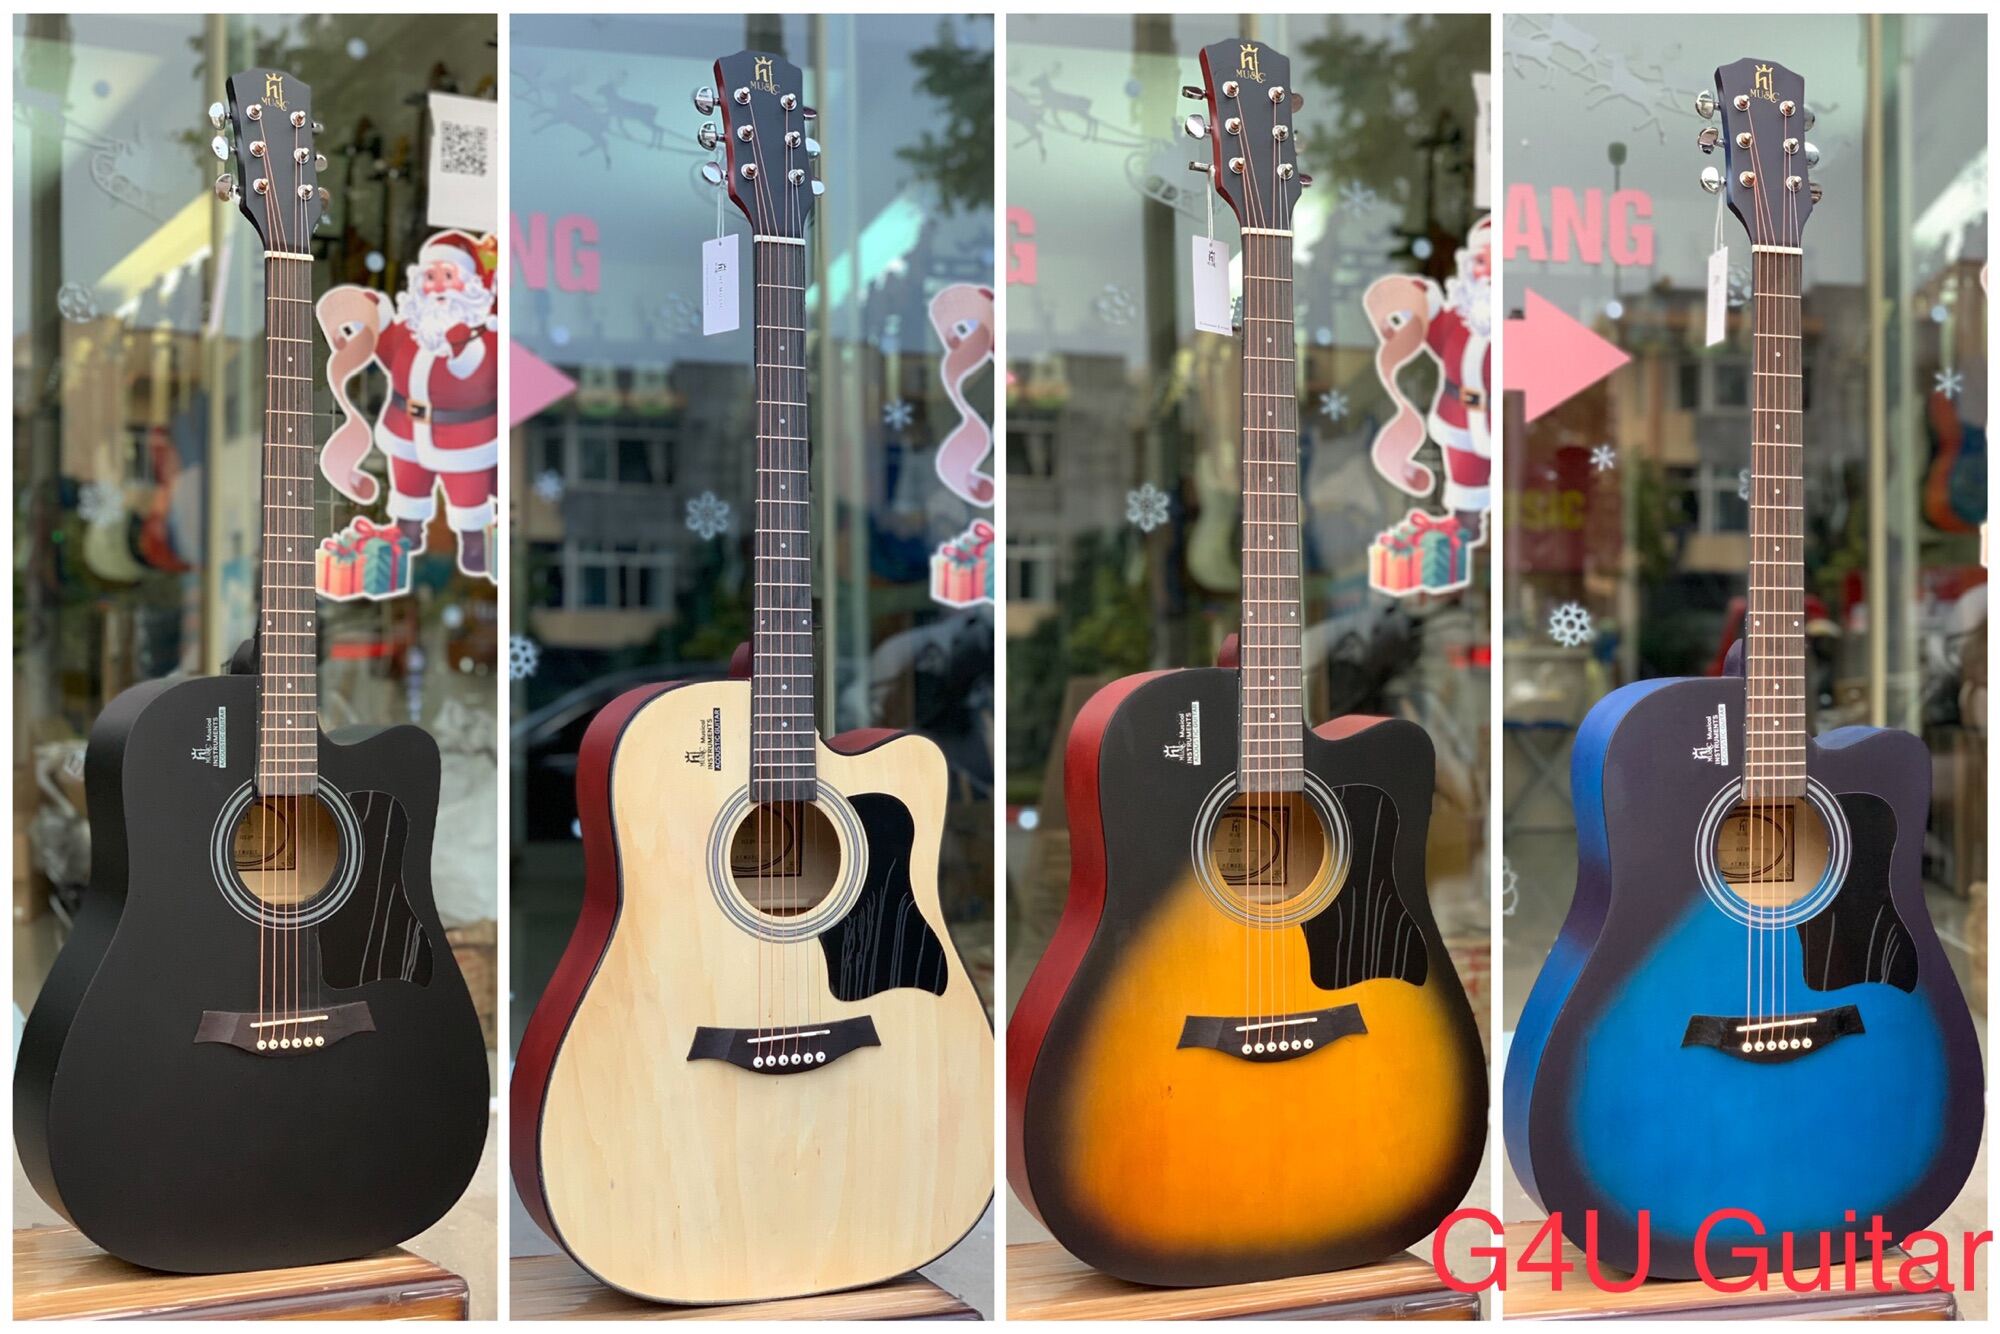 Đàn guitar Acoustic HT cao cấp phân phối bởi G4U guitar